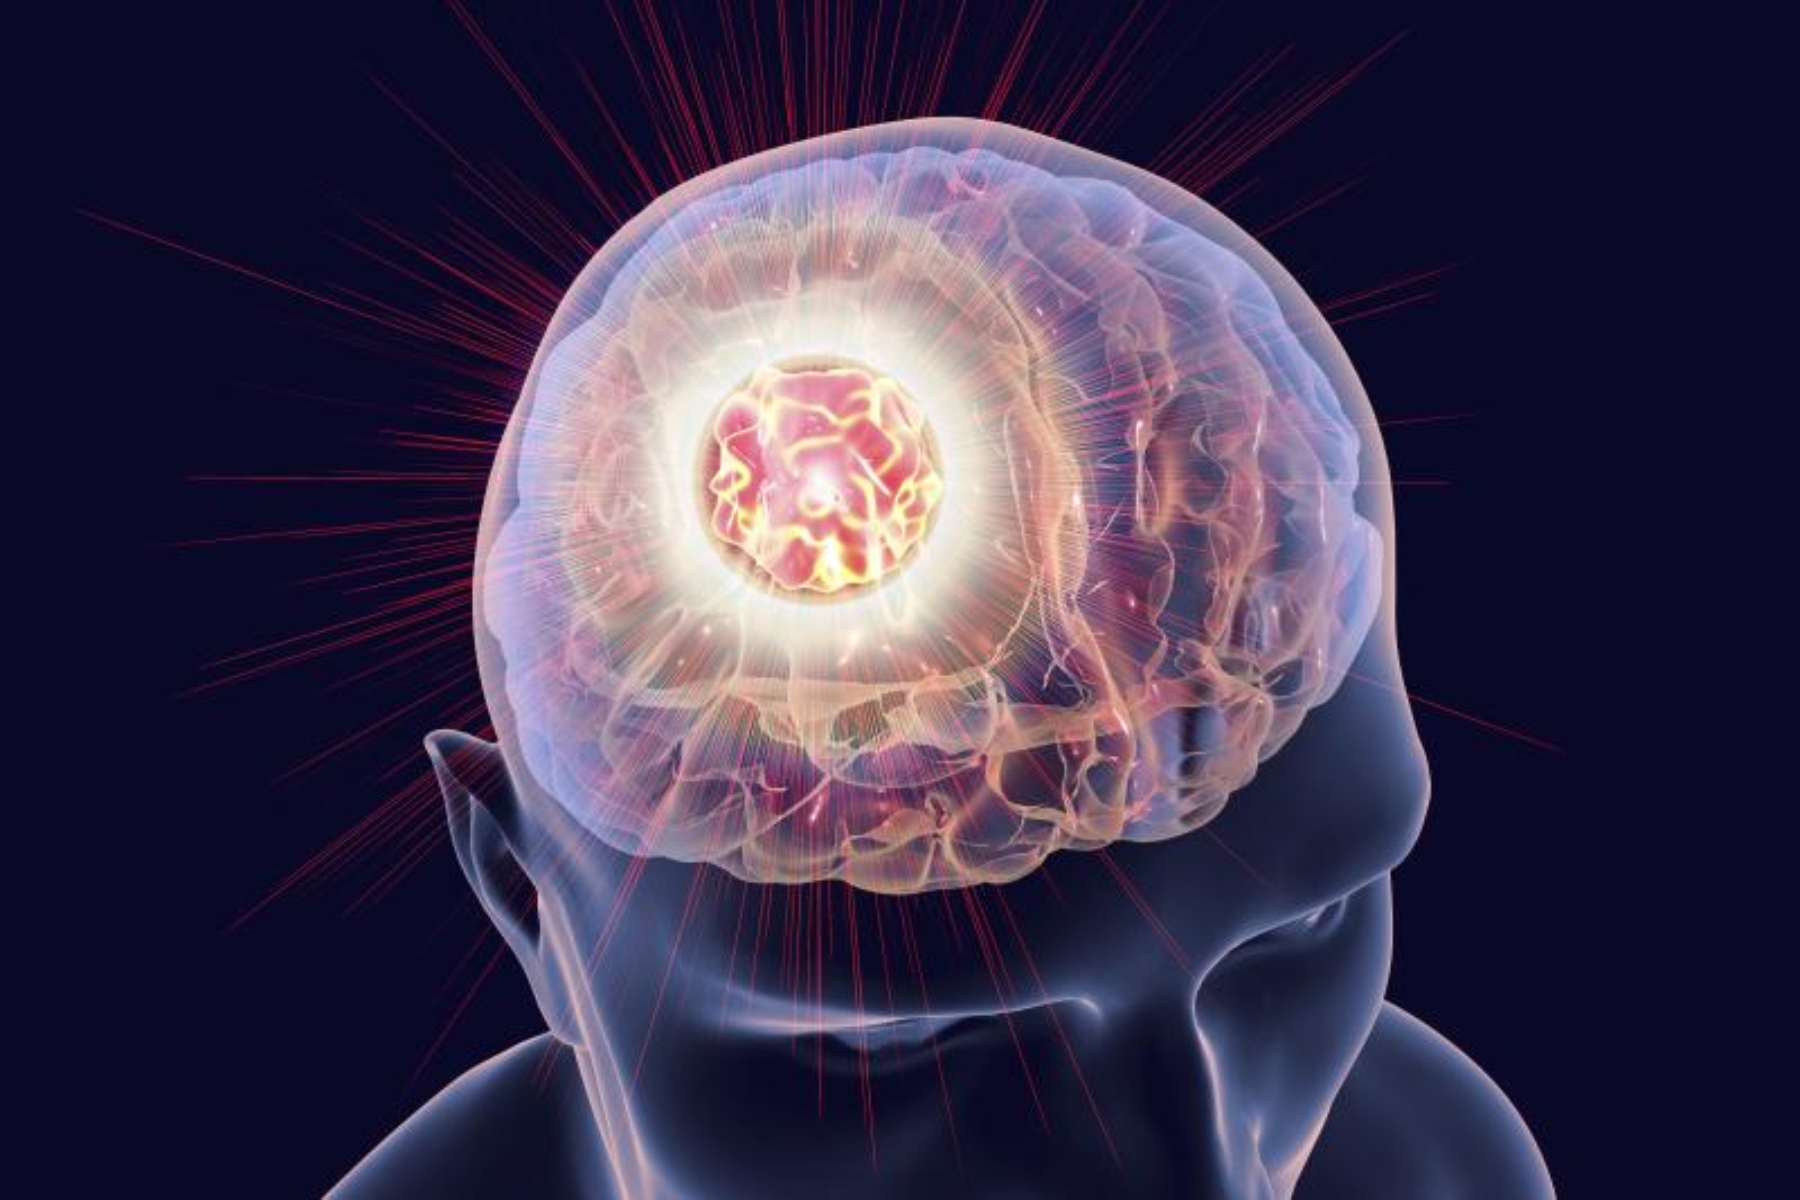 Μελάνωμα μετάσταση: Νέες πληροφορίες για τις μεταστάσεις μελανώματος στον εγκέφαλο